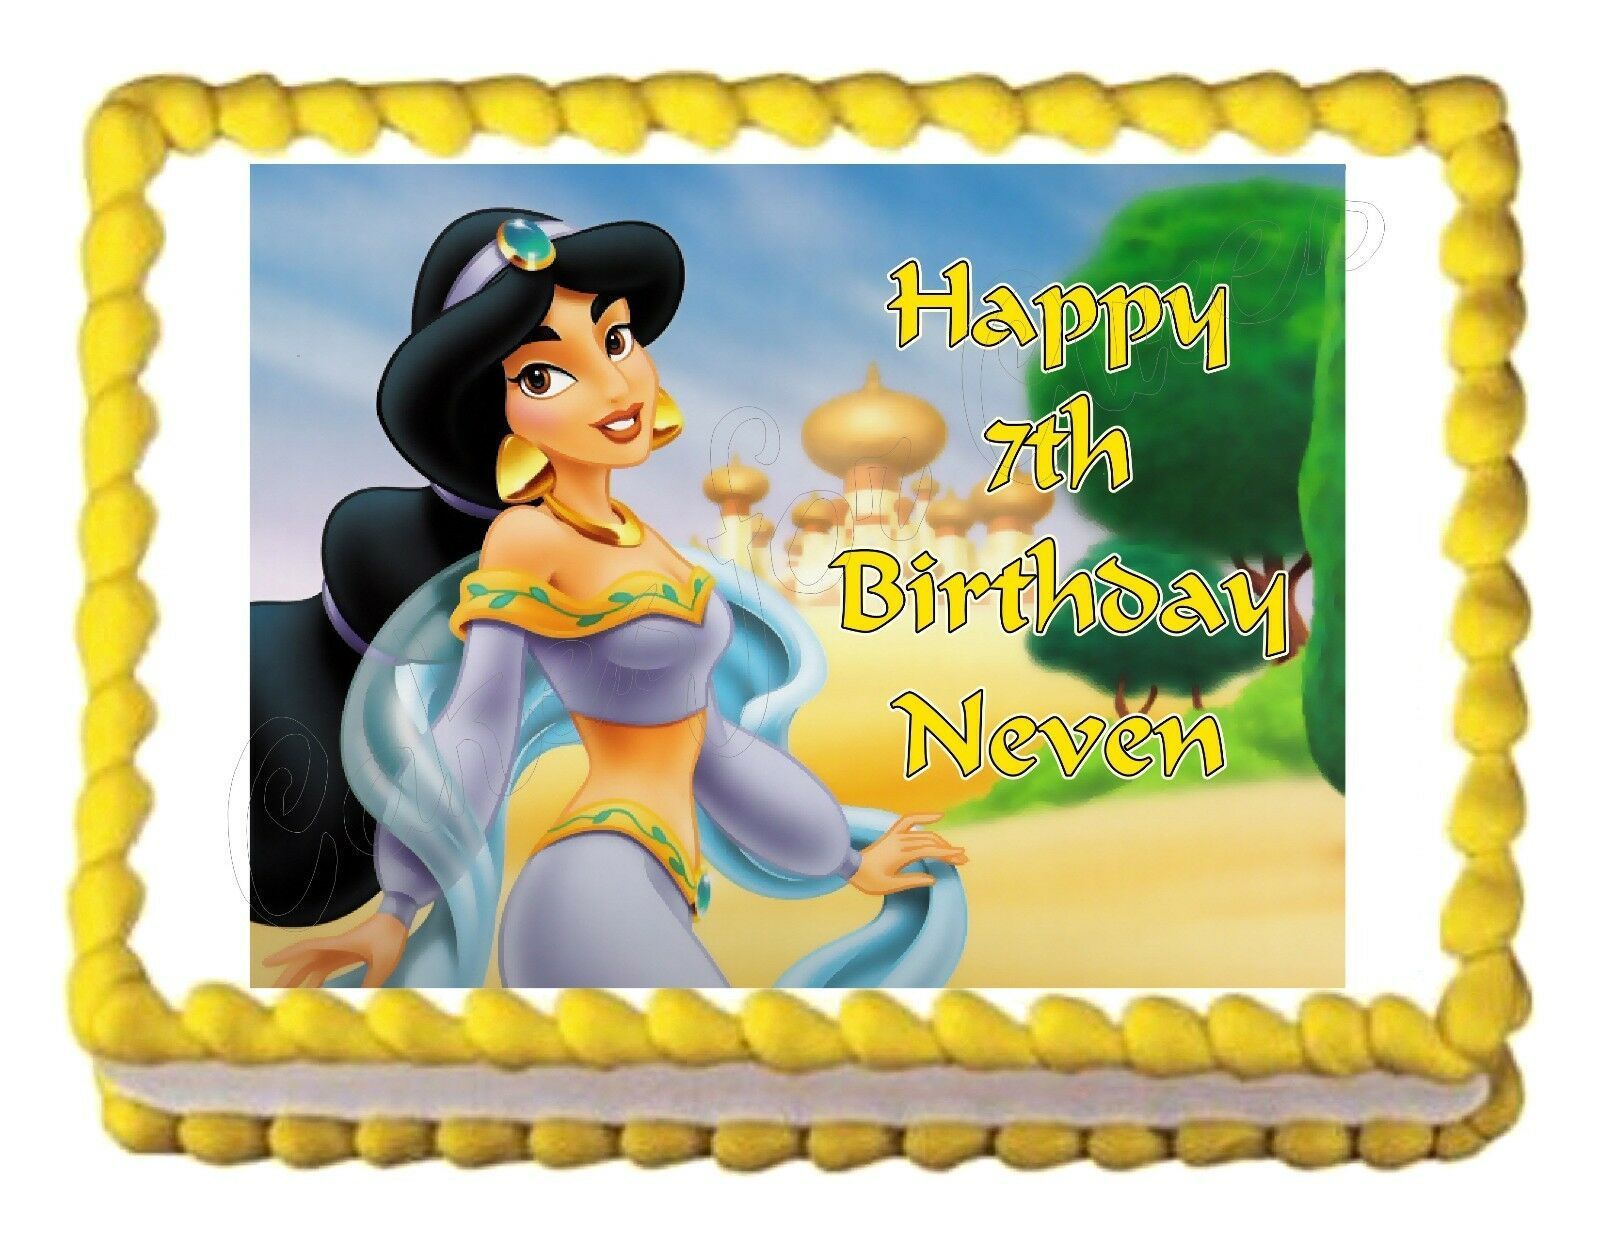 Princess Jasmine (Aladdin)  Edible Cake Image Cake Topper - $9.99 - $11.49